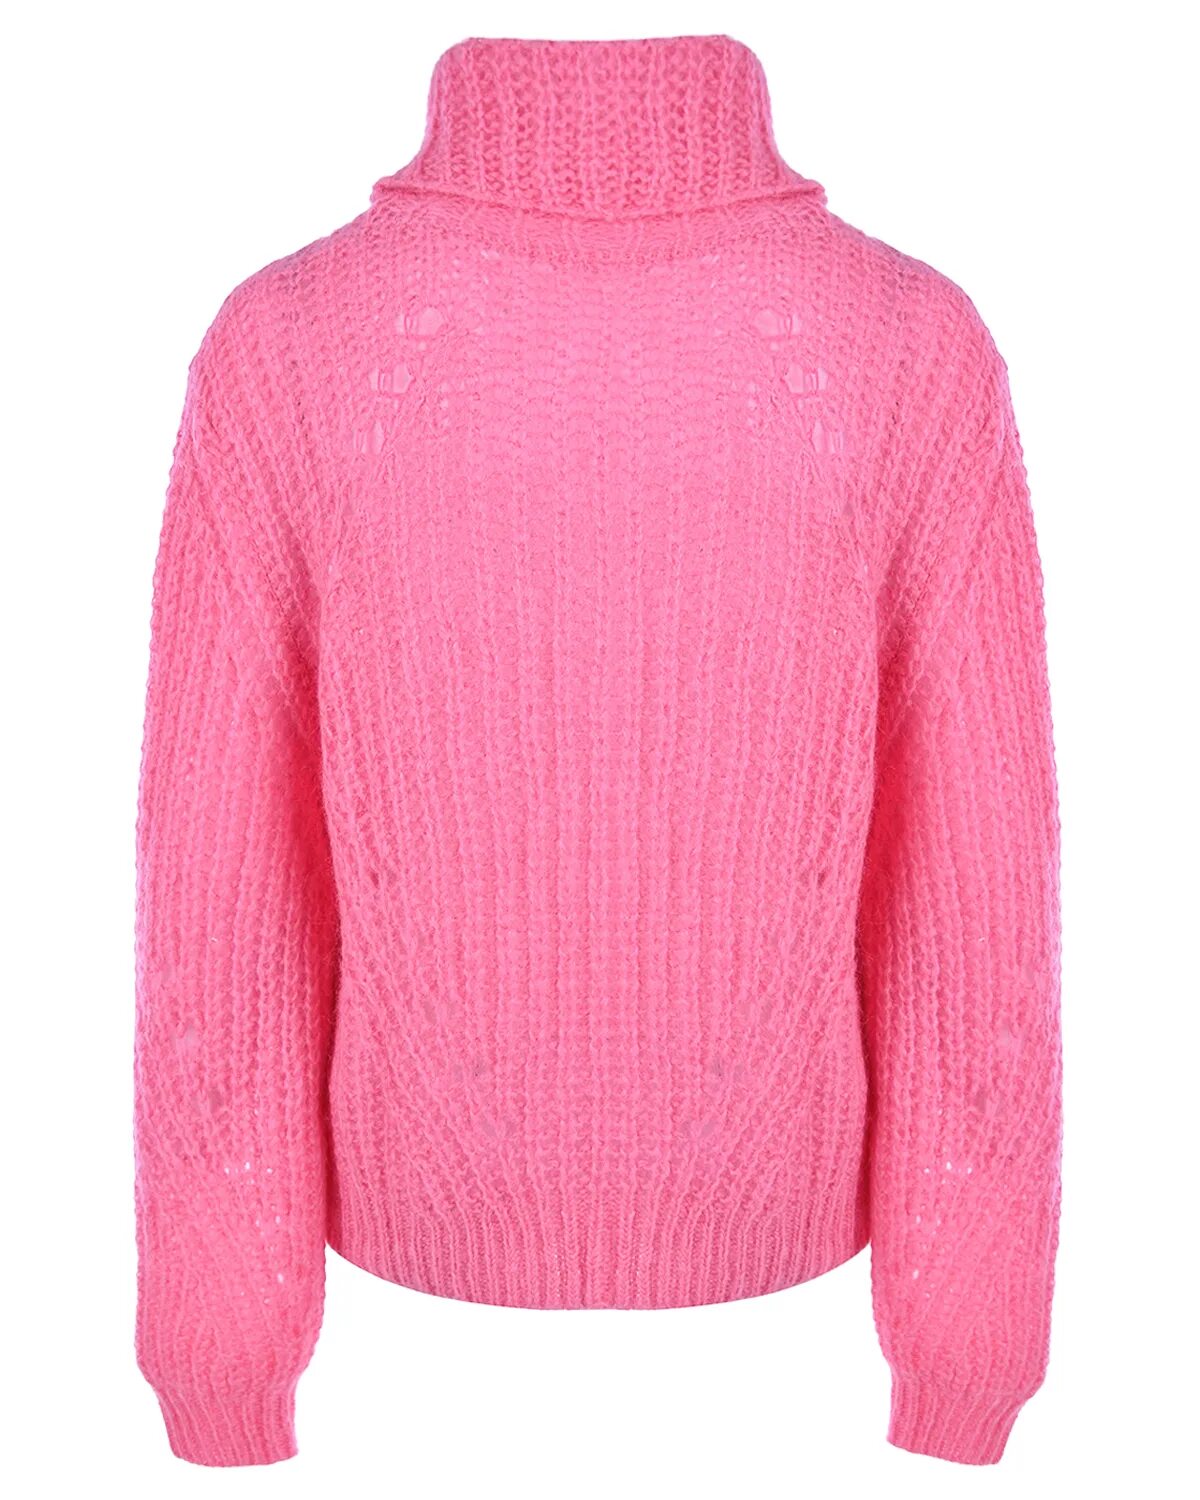 Джемпер розовый. Розовый свитер. Розовый пуловер водолазка. Песни розовый свитер